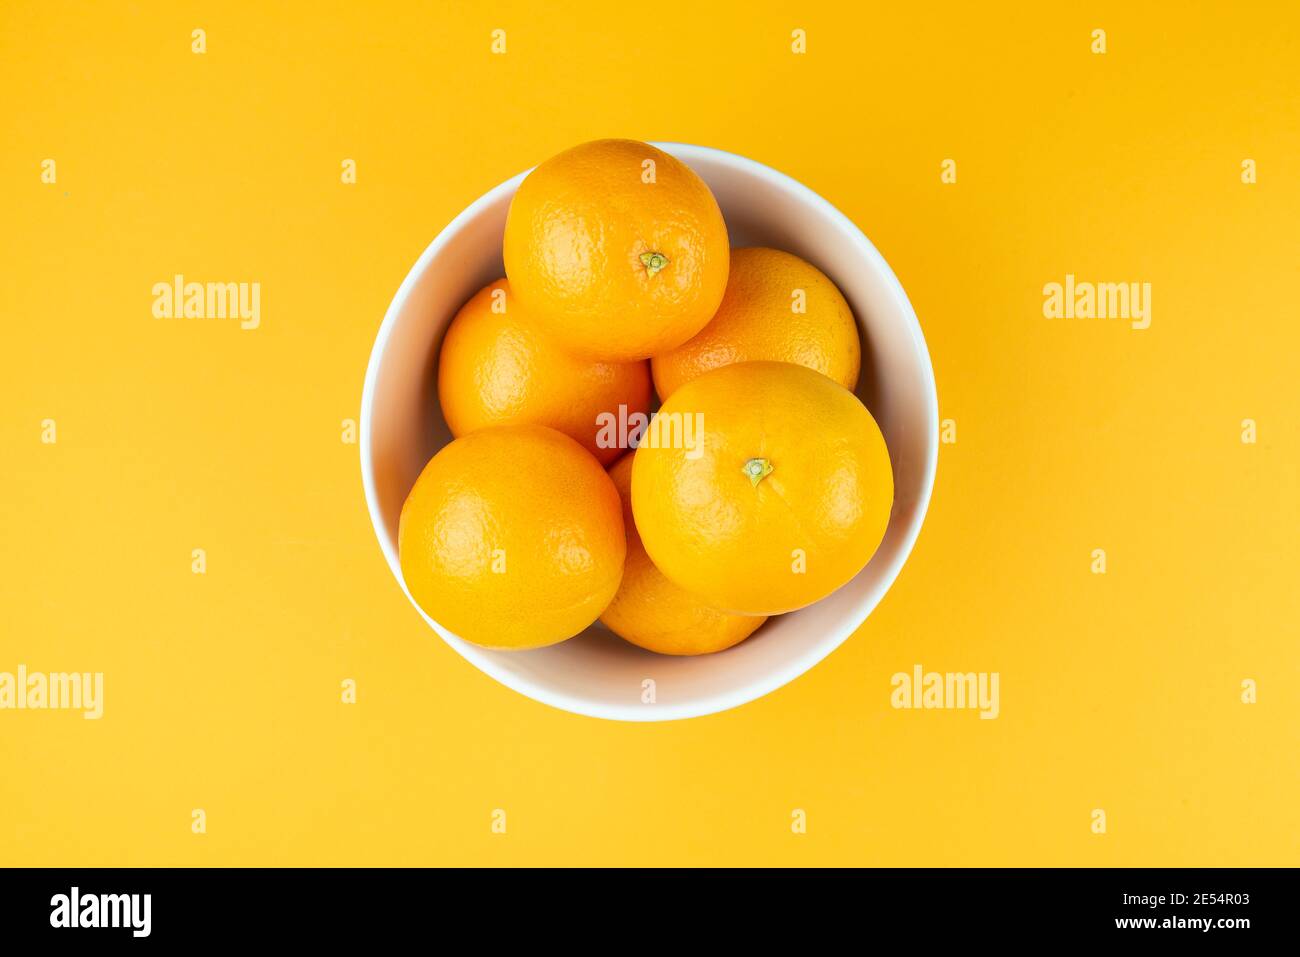 directement au-dessus de la vue d'un bol blanc rempli d'oranges juteuses sur fond orange Banque D'Images